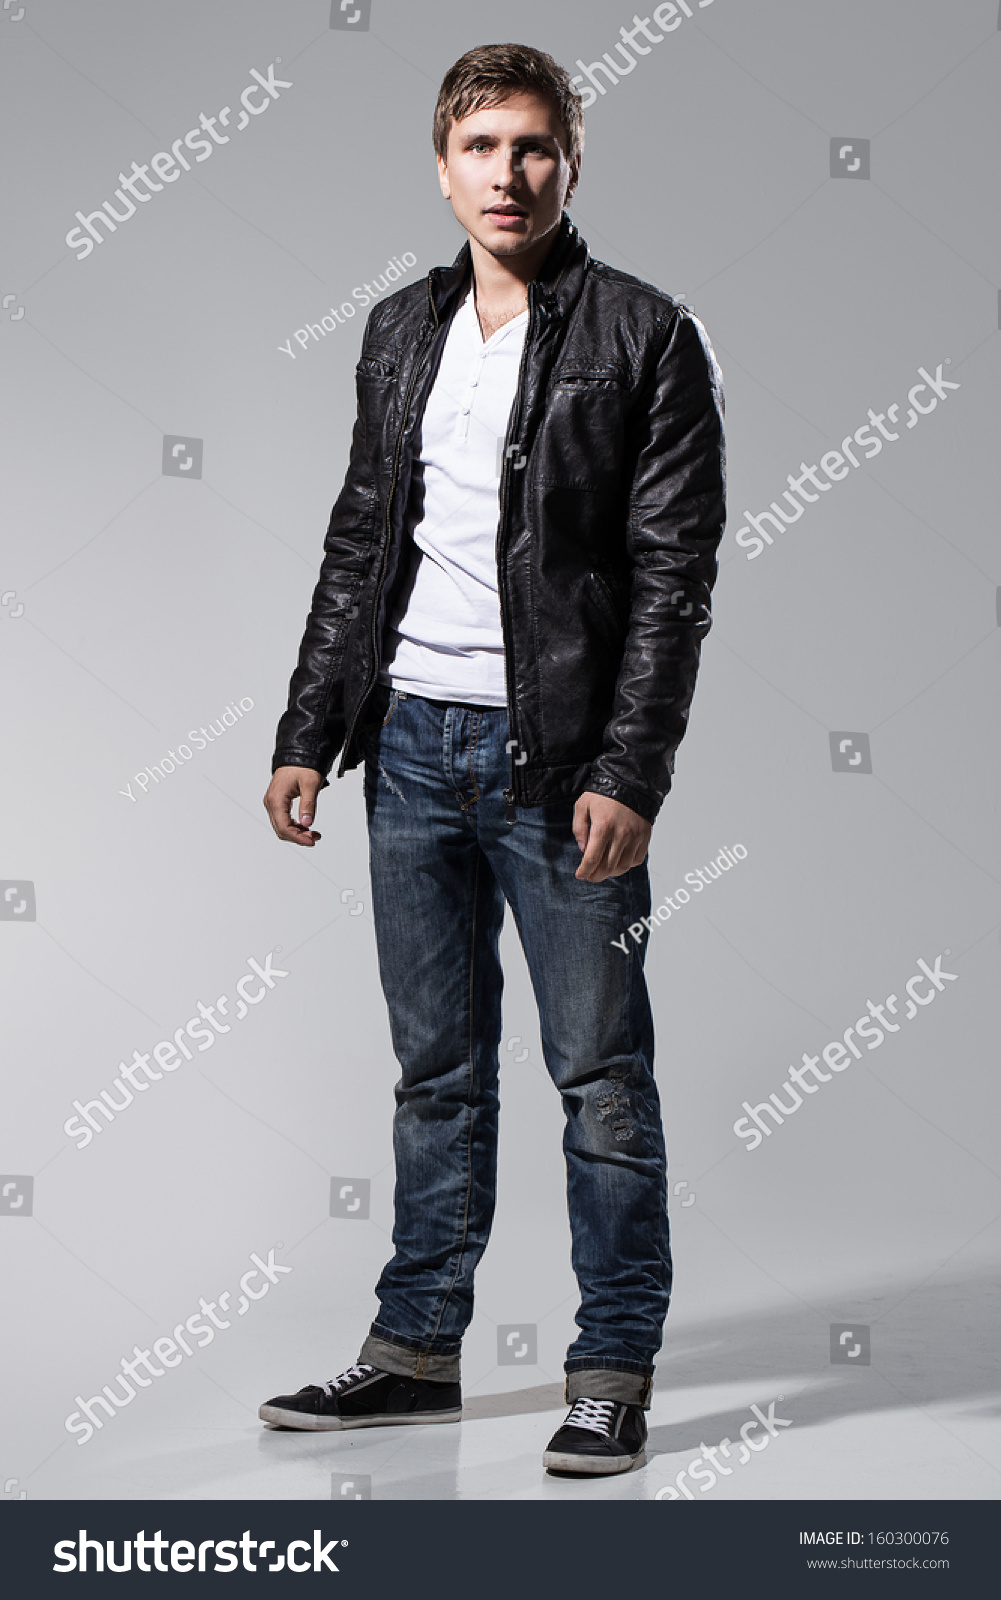 Leather Jacket White T Shirt - My Jacket